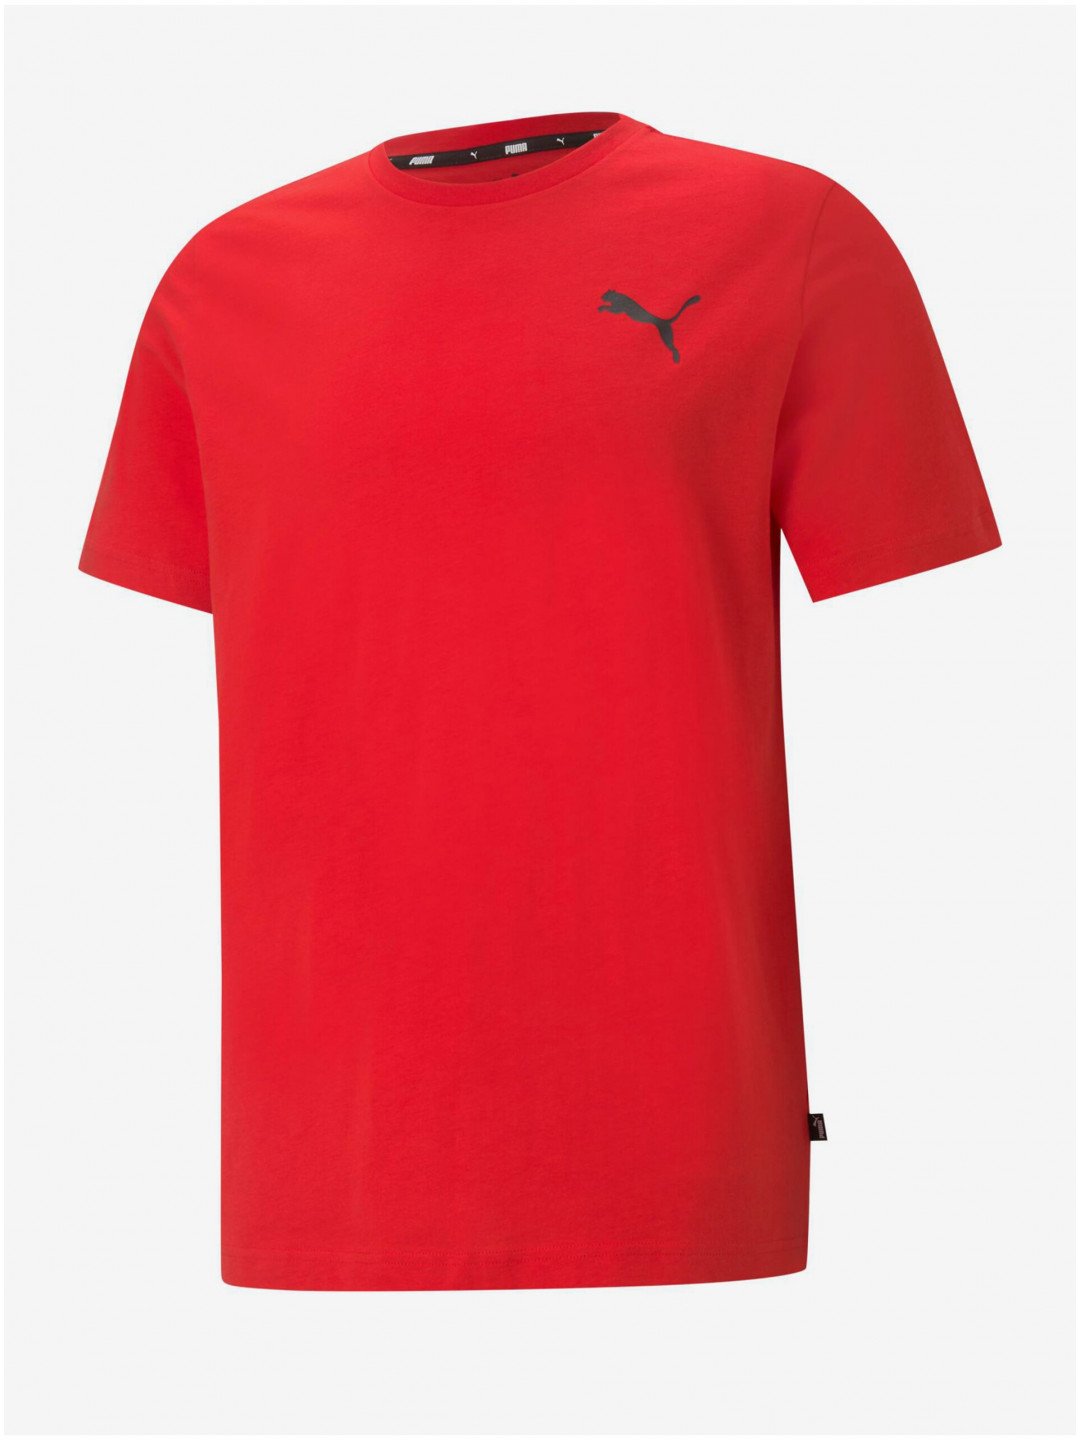 Červené pánské tričko Puma ESS Small Logo Tee